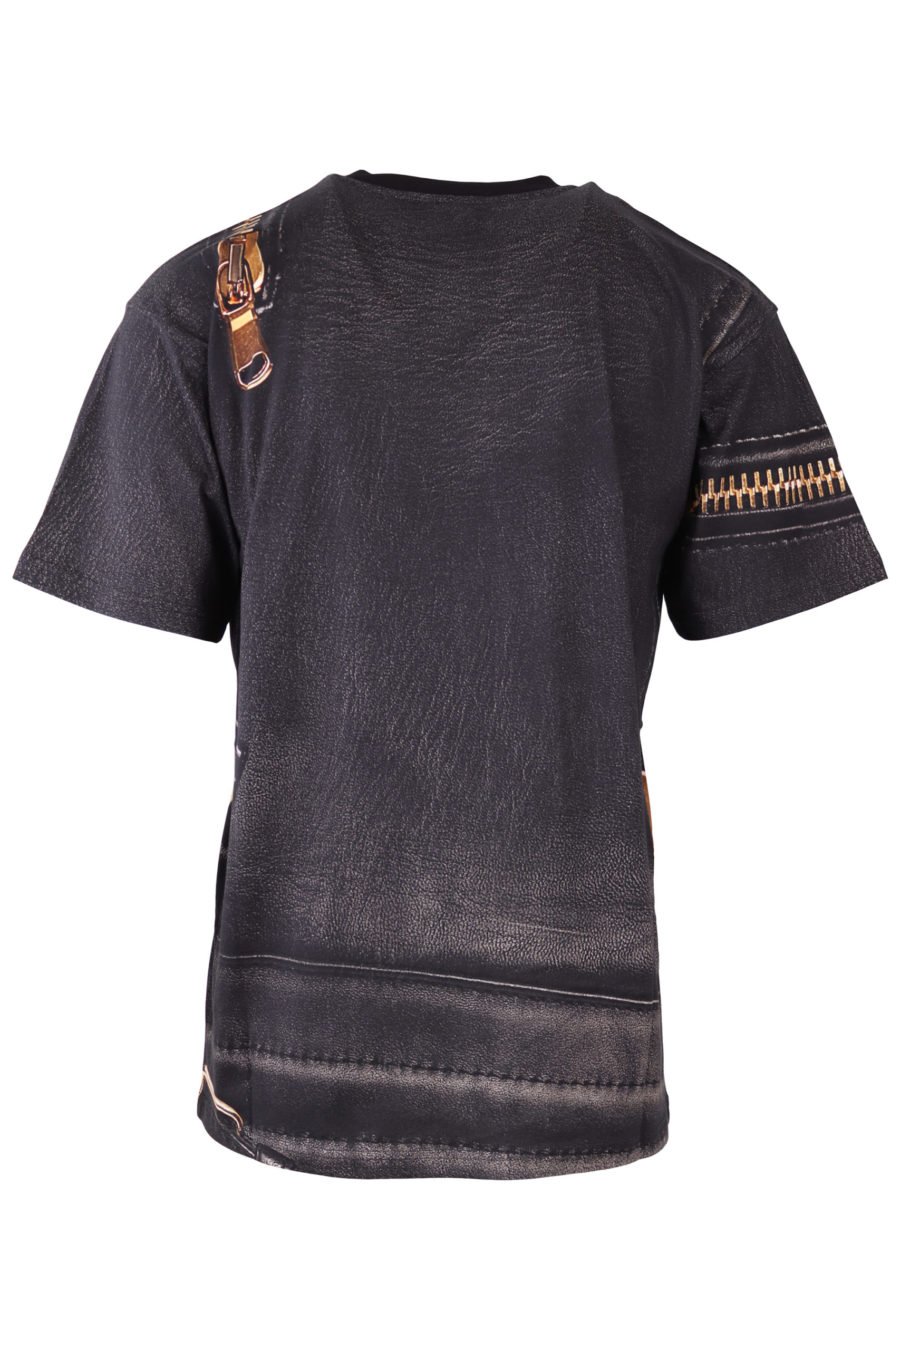 T-shirt Moschino Couture preta com fecho de correr dourado - IMG 6516 à escala